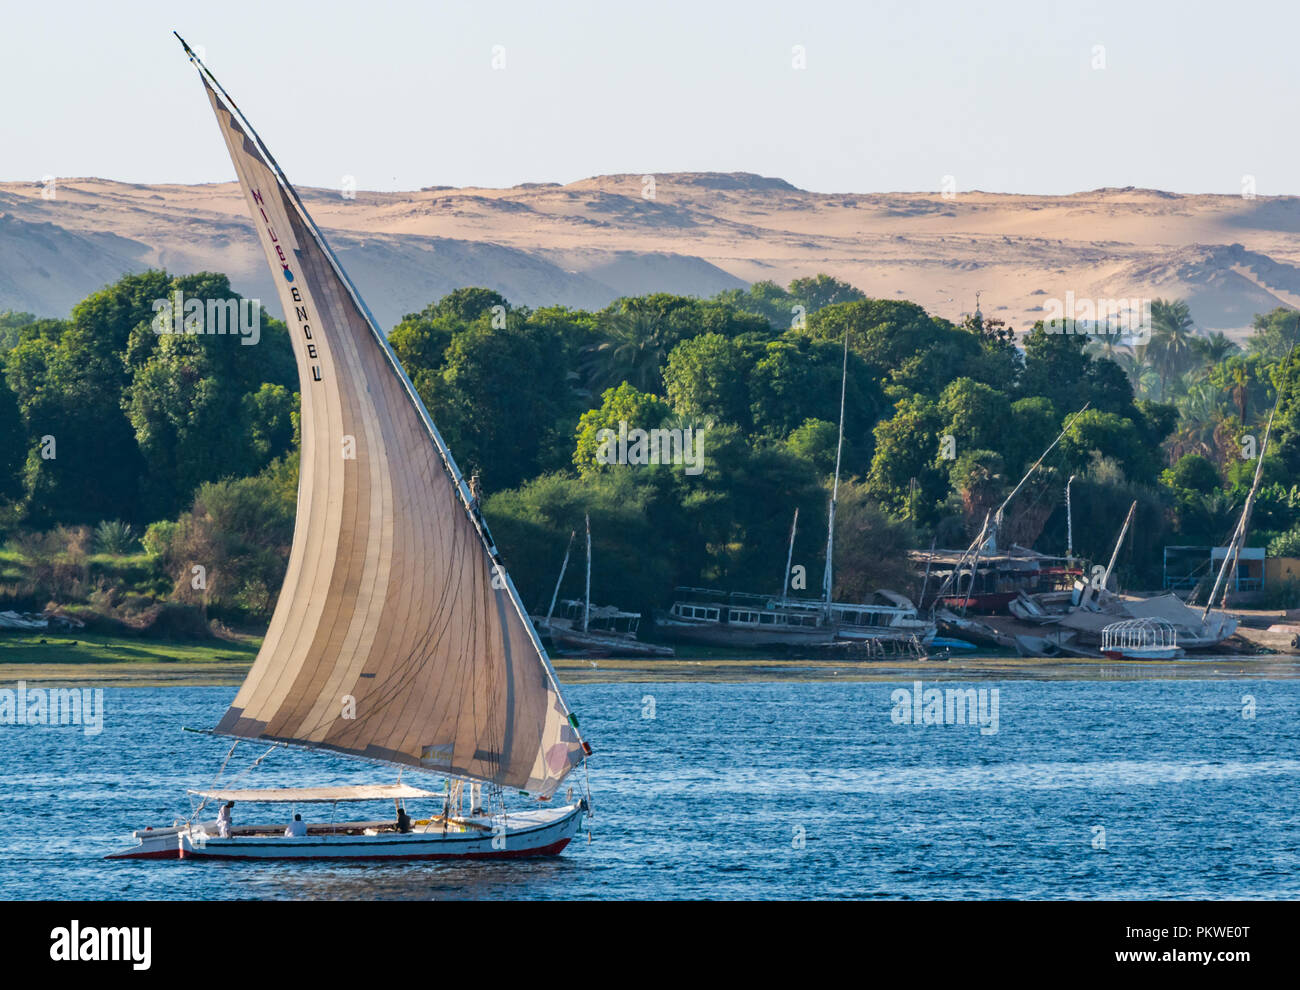 Die traditionellen Feluke segeln Boote, der Nil mit Bäumen am Flussufer und Wüste Felsen im Abstand in der Dämmerung Licht, Assuan, Ägypten, Afrika Stockfoto